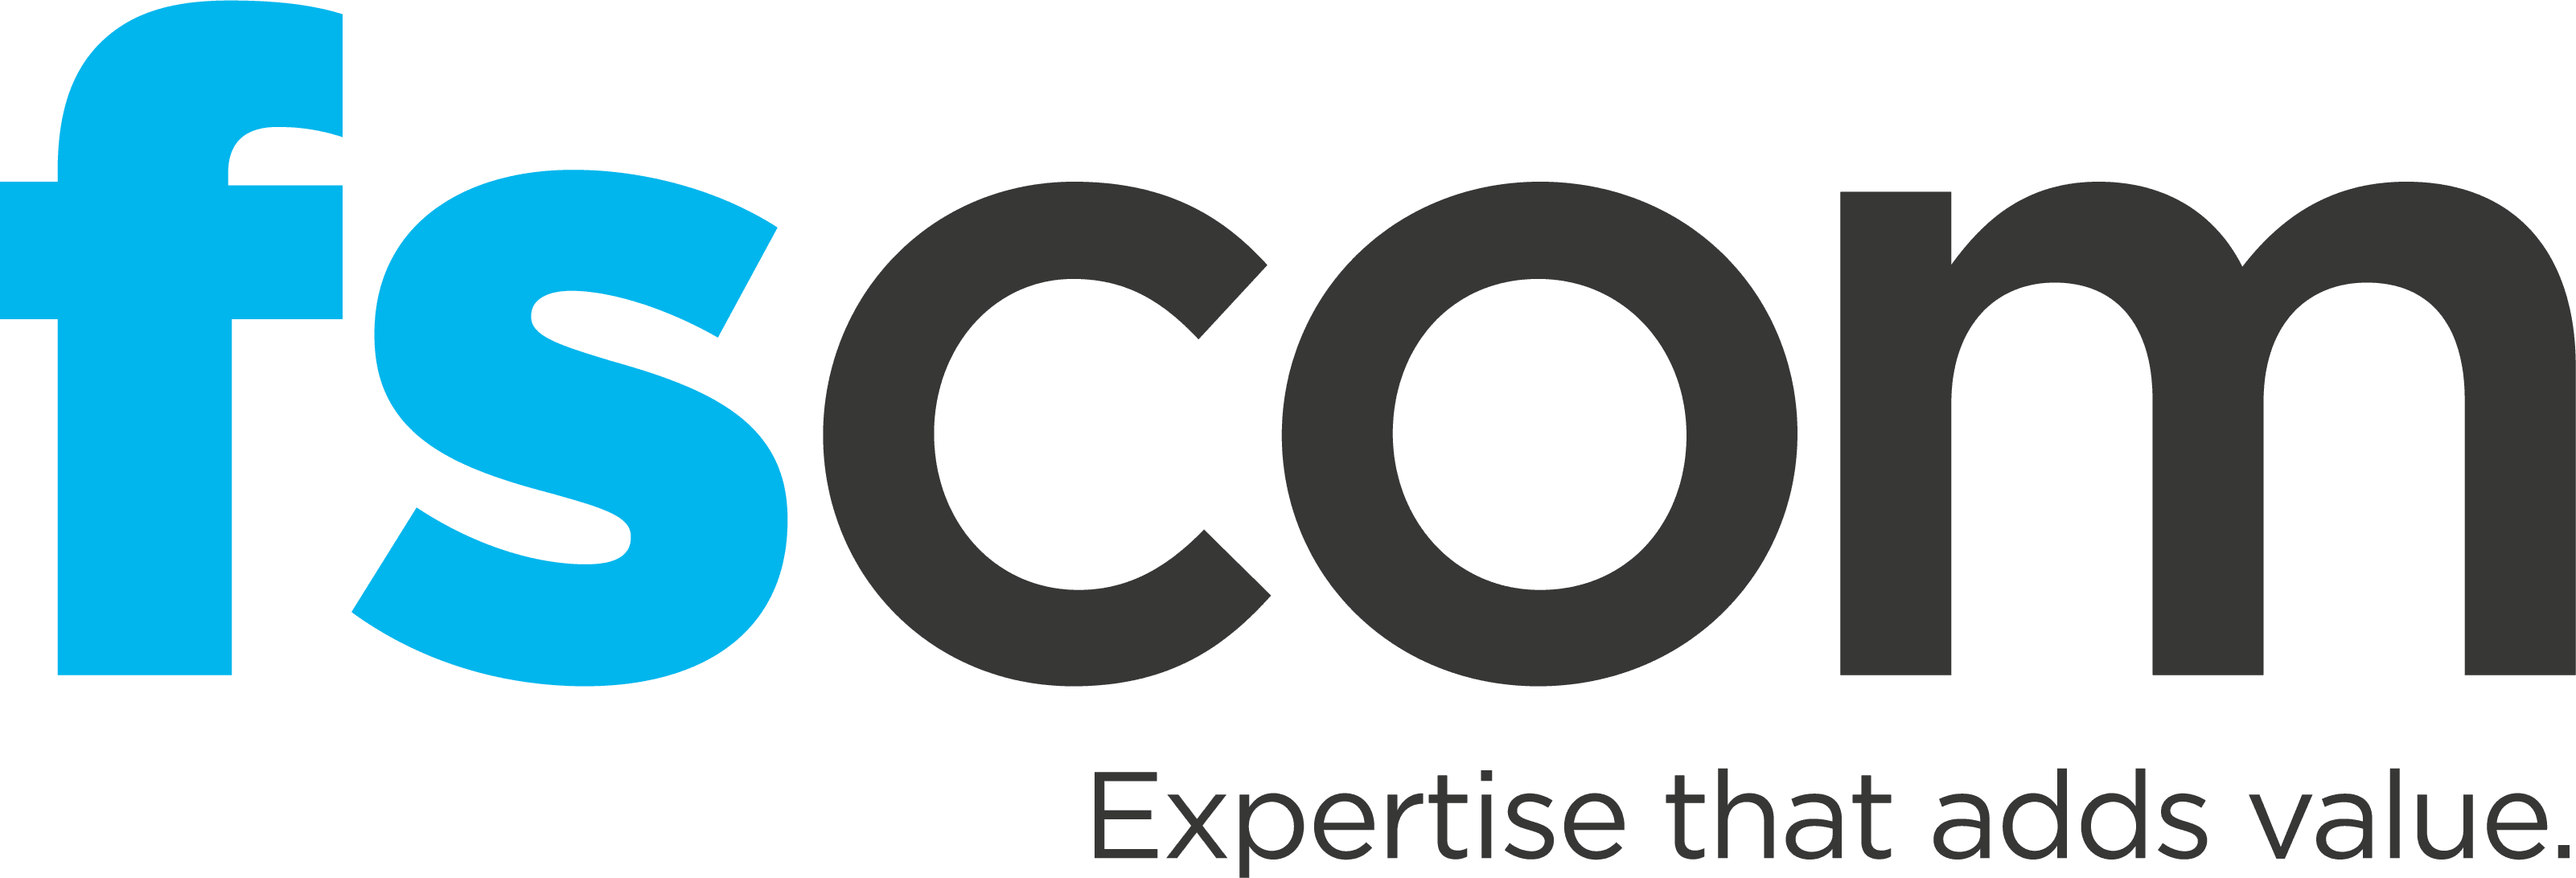 fscom_logo